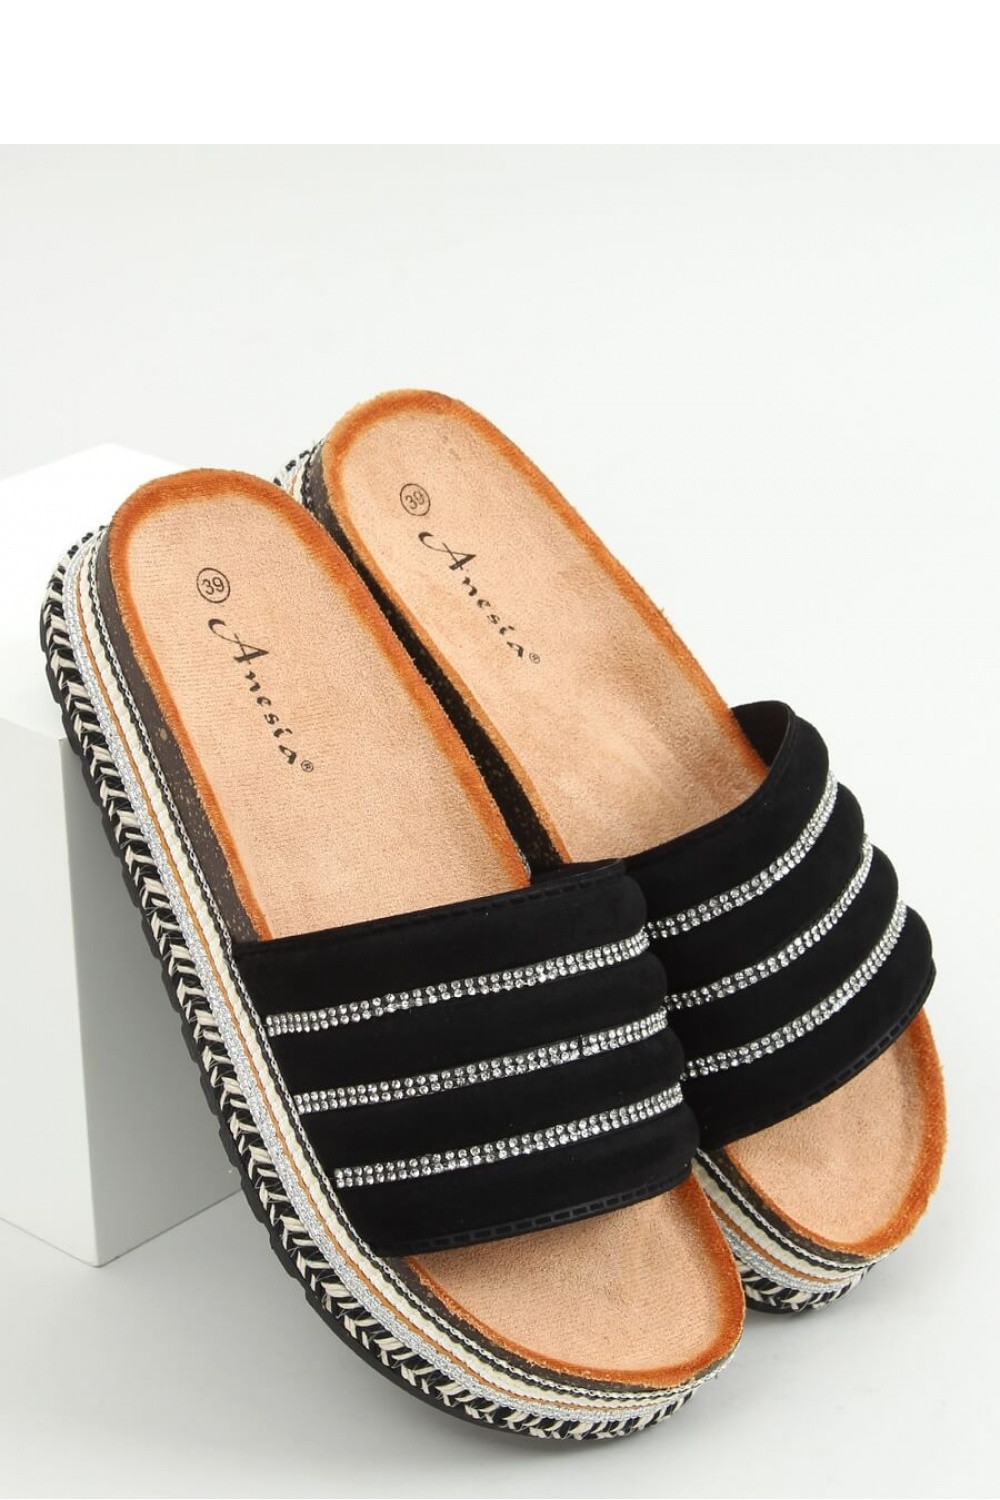 Dámské pantofle model 18717998 černé 36 - Inello Velikost: 36, Barvy: černé stříbro